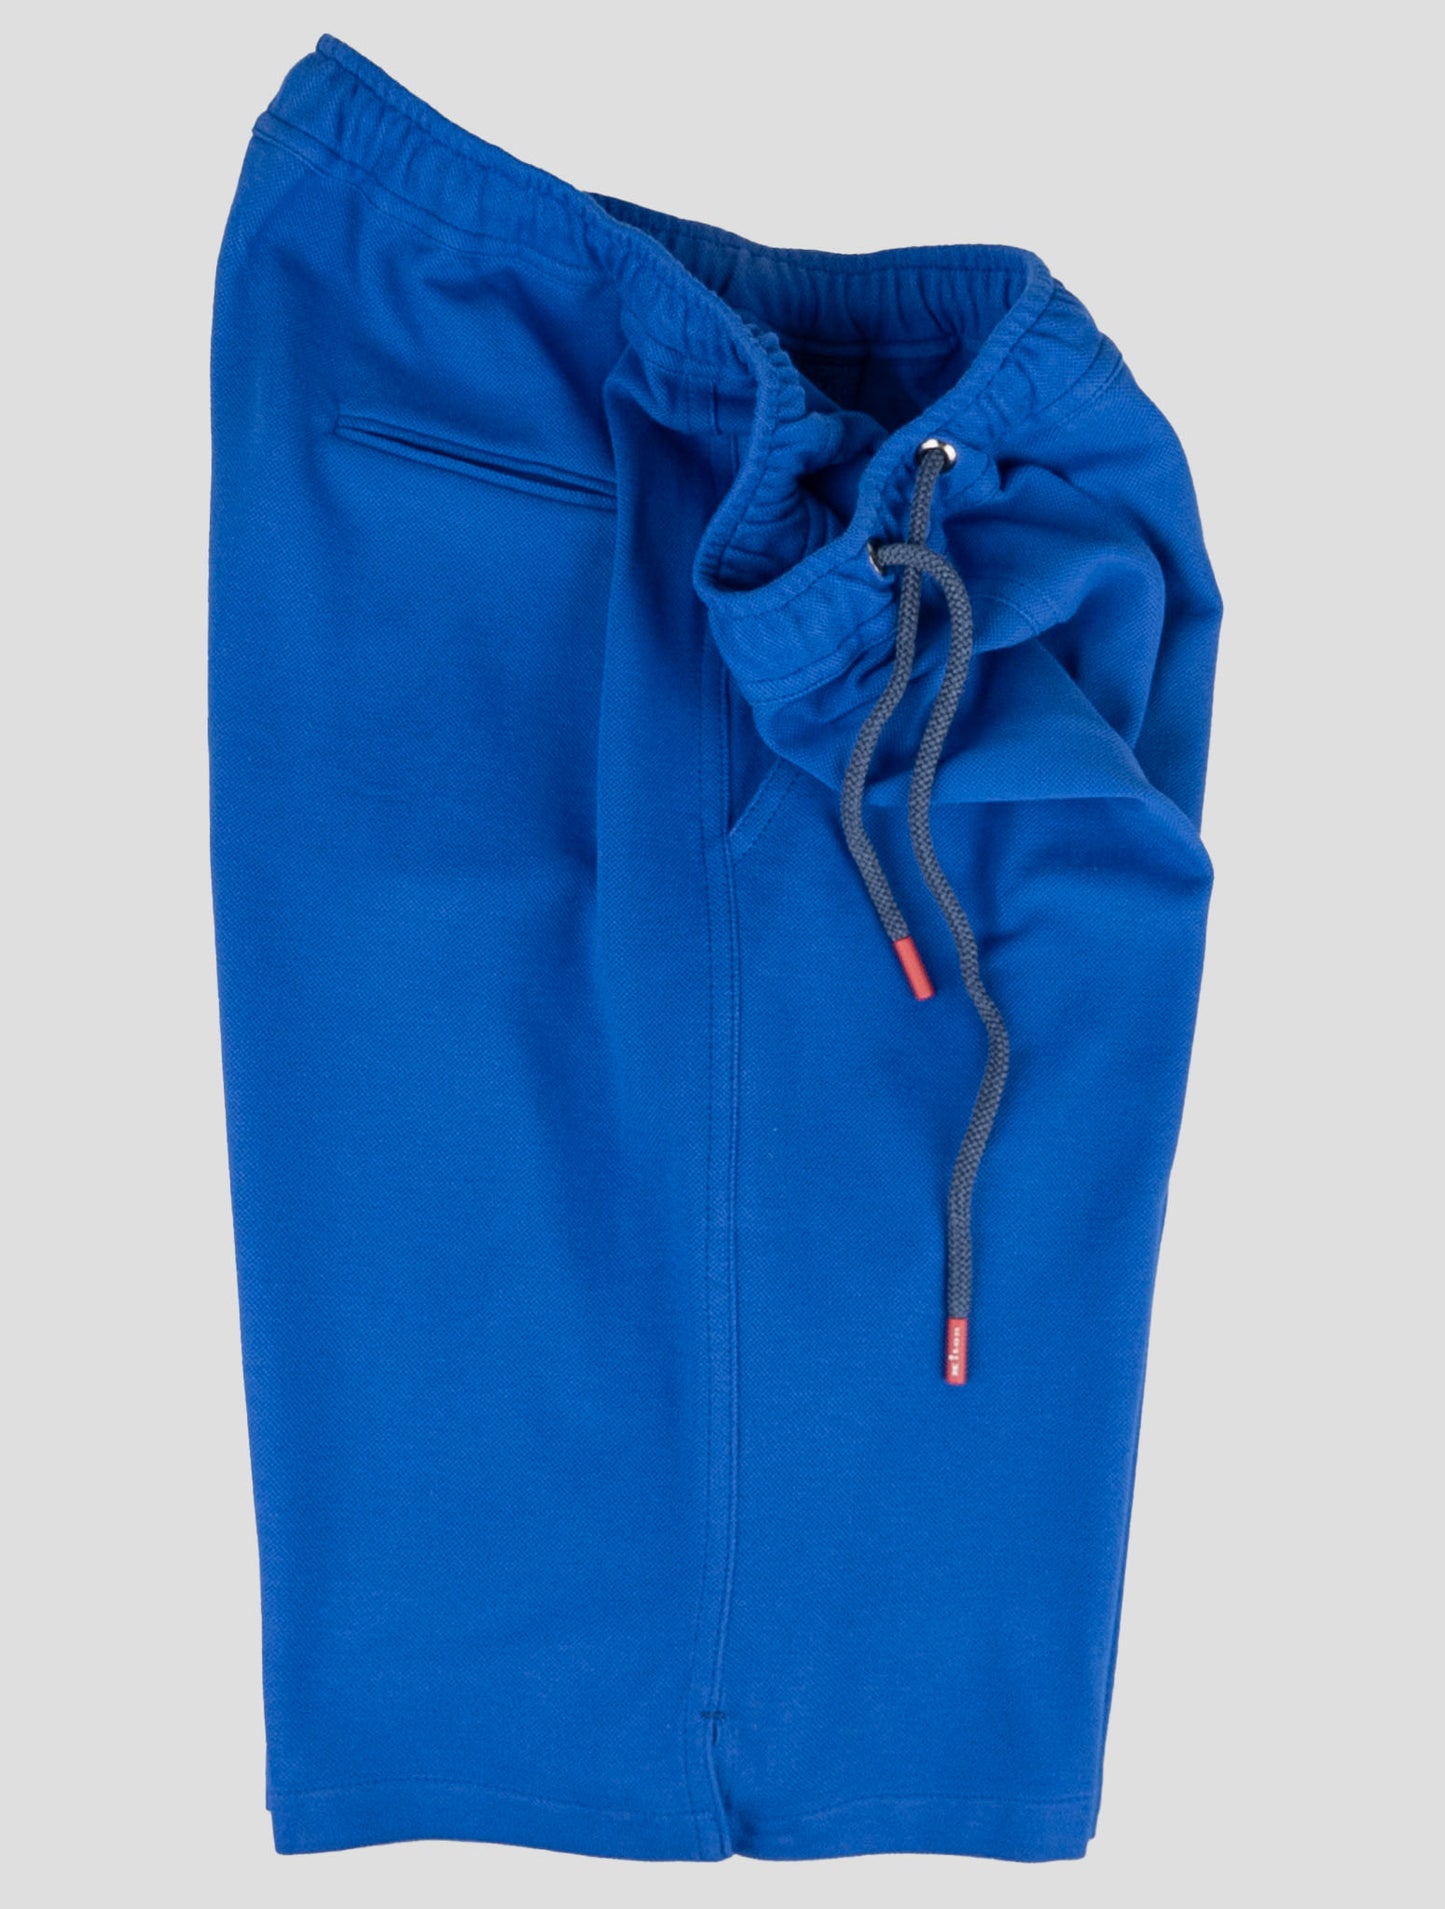 Kiton Matching Outfit - Sort Umbi og Blue Short Pants Træningsdragt